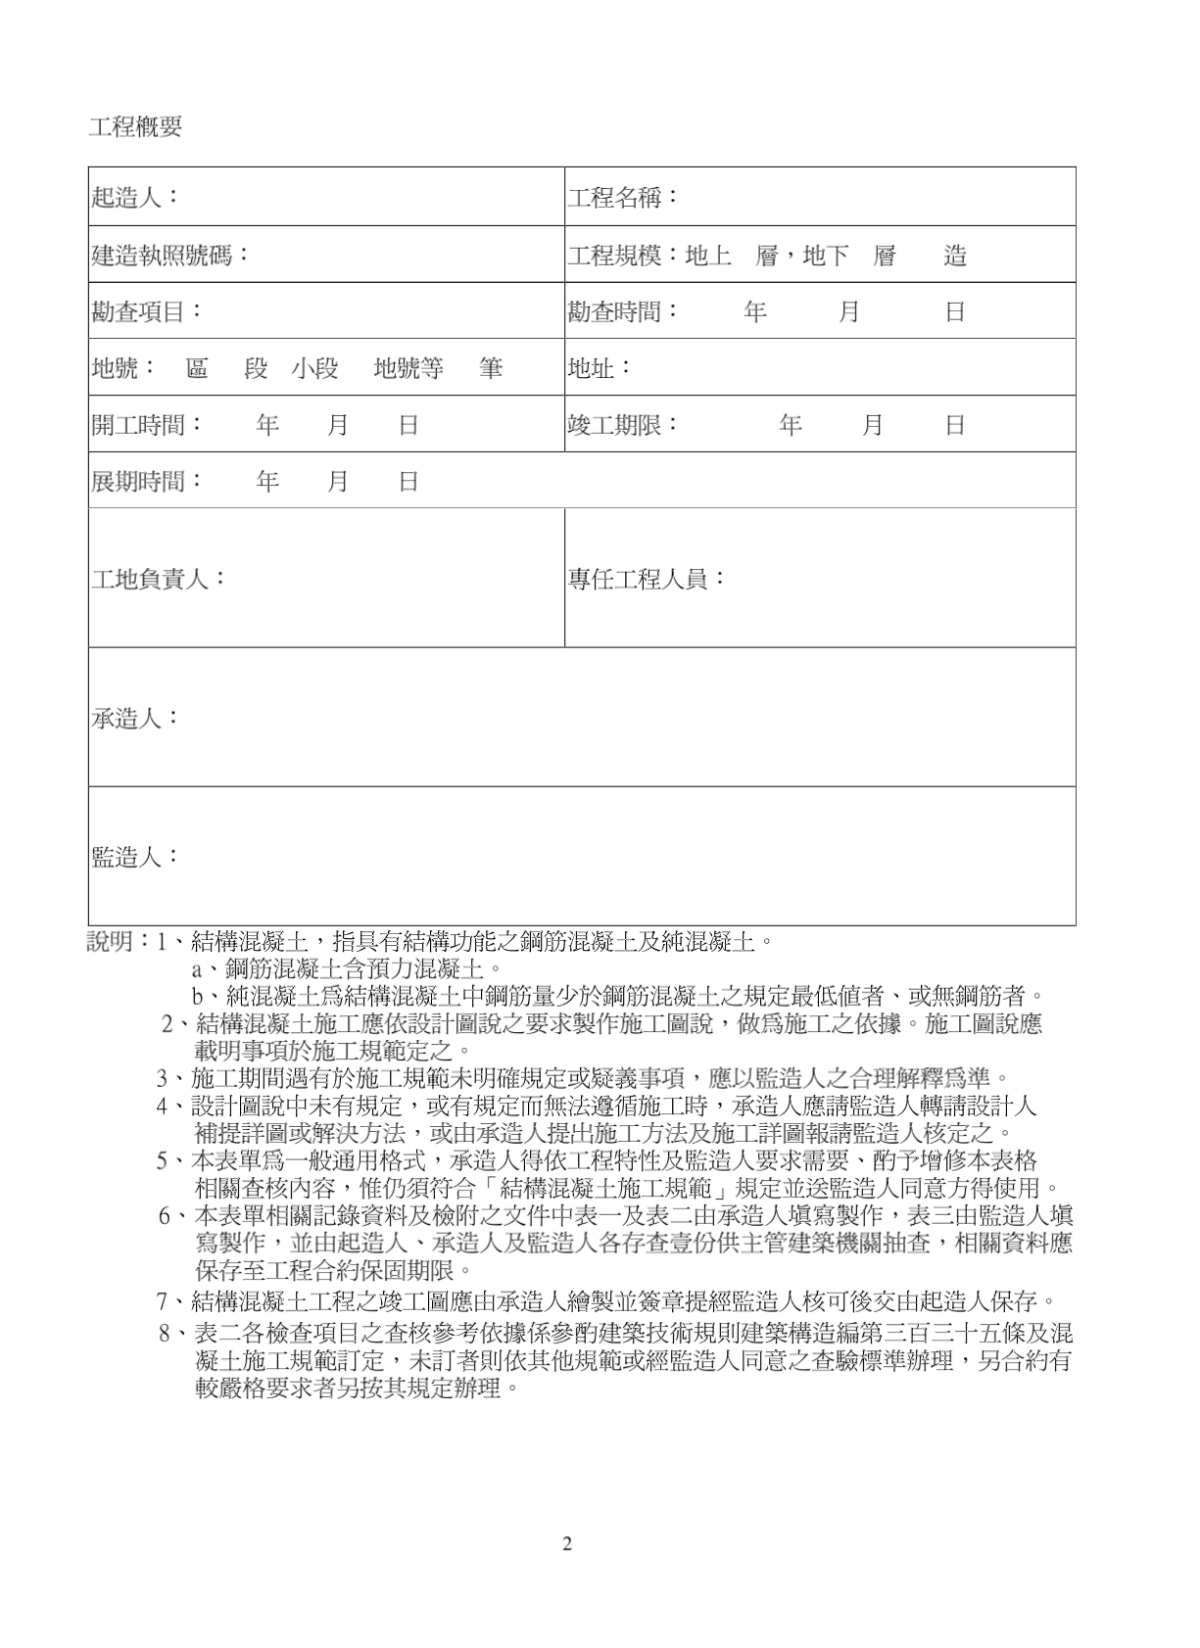 A-5-2、台南县结构混凝土建筑物工程施工品质管制纪录表-图二